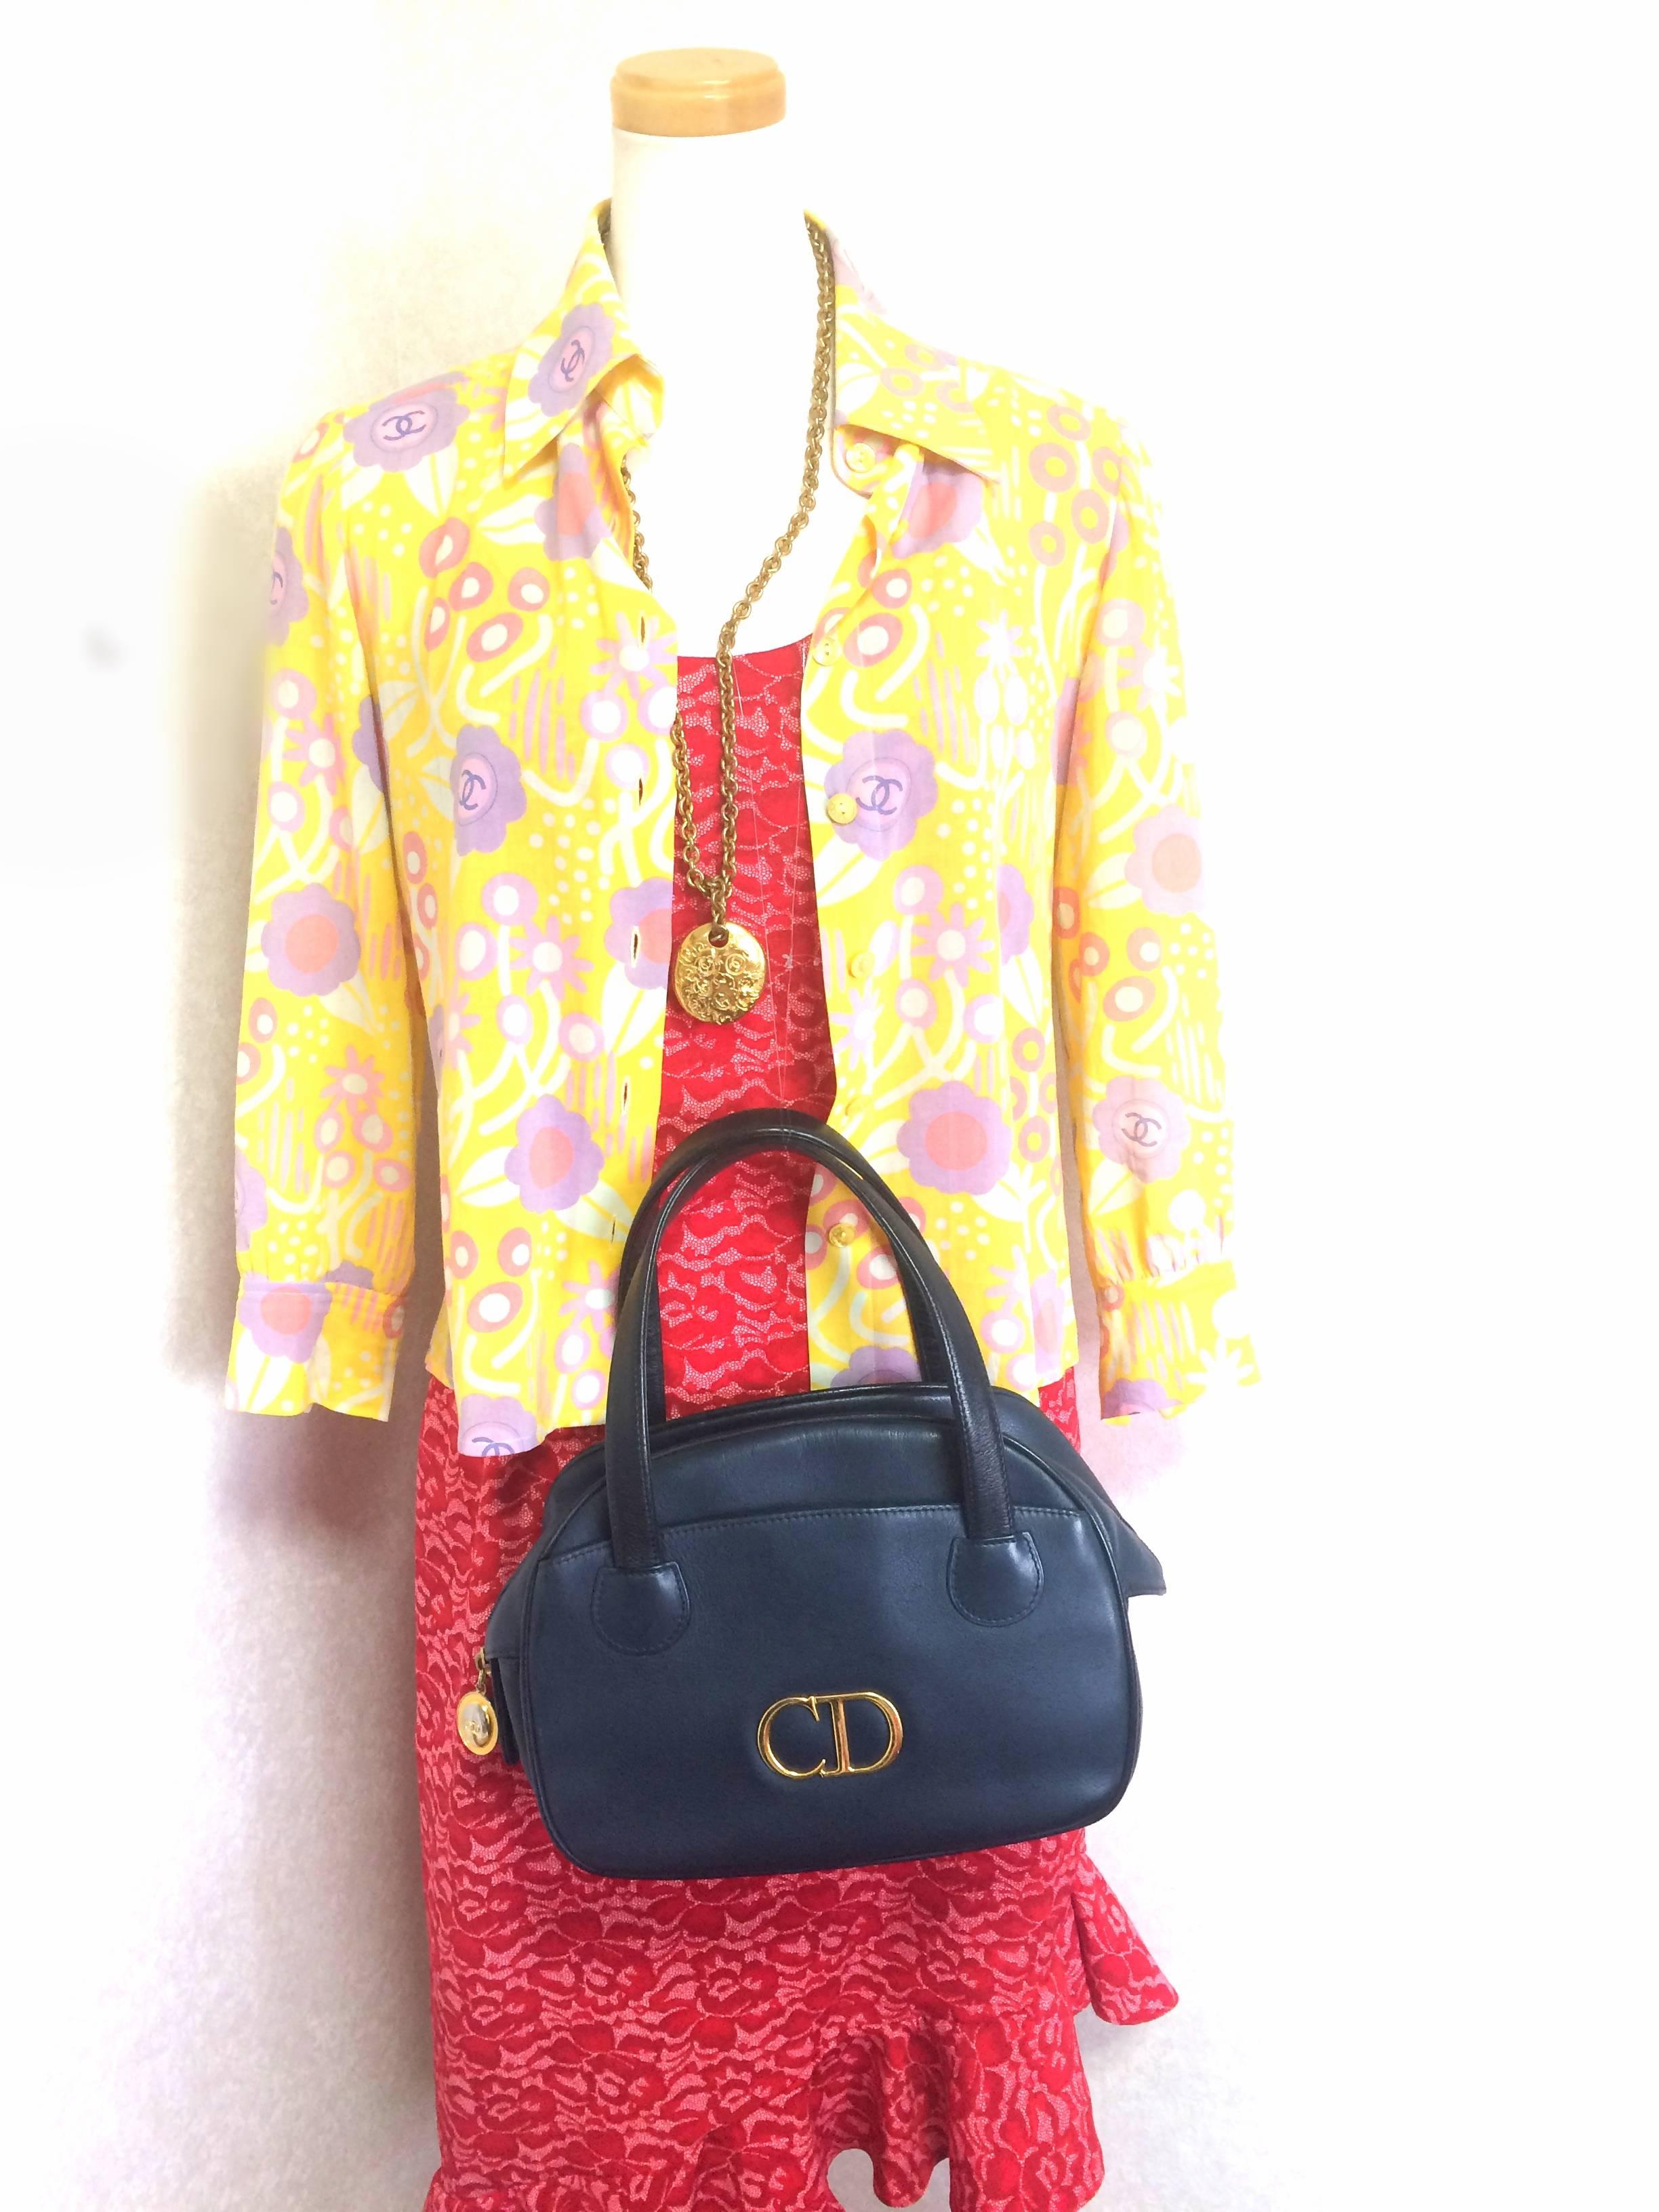 Vintage Christian Dior navy bolide style handbag with golden large CD logo motif 5